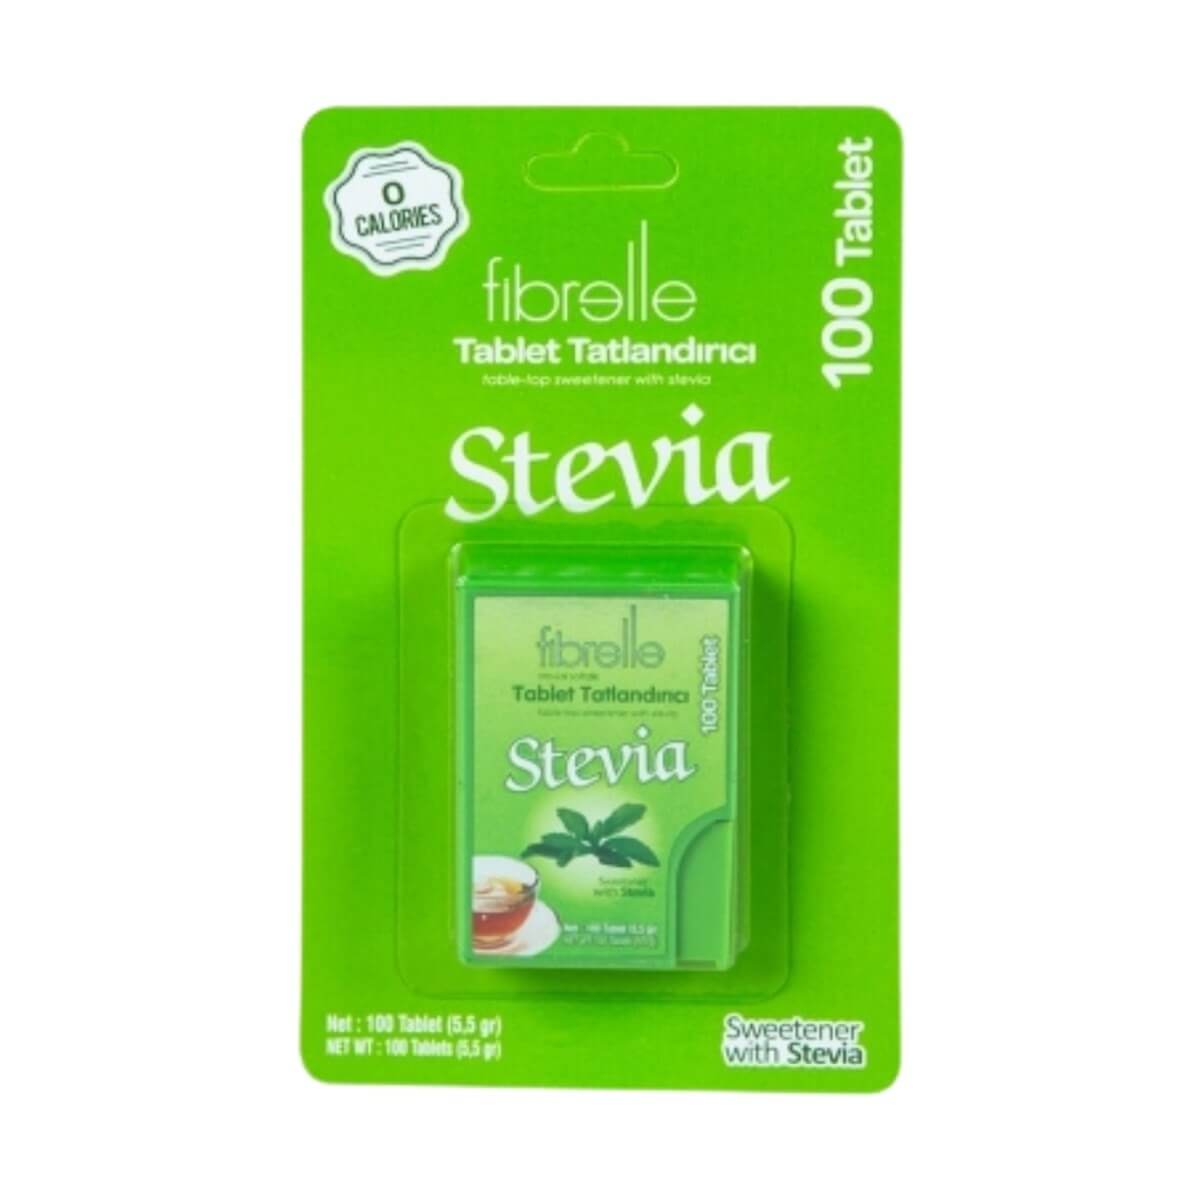 Fibrelle Stevia Tablet Tatlandırıcı 100 Tablet